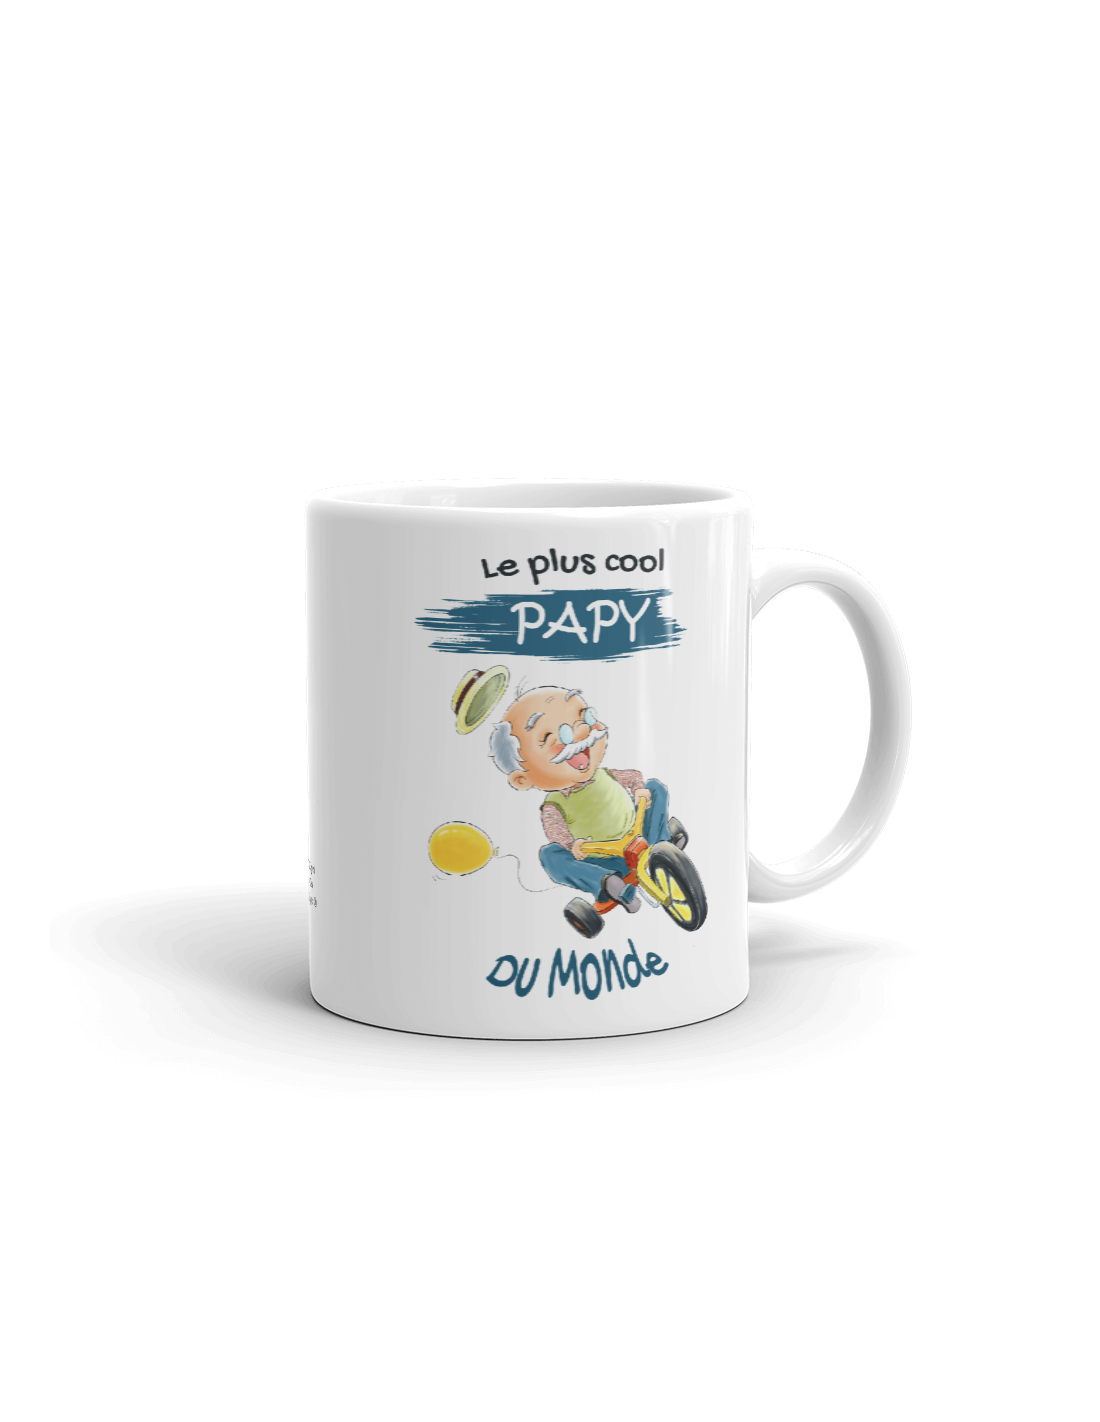 Tasse Mug Cadeau Papy Le Plus Cool Du Monde Idee Originale Humour Personnalise Anniversaire Fete Des